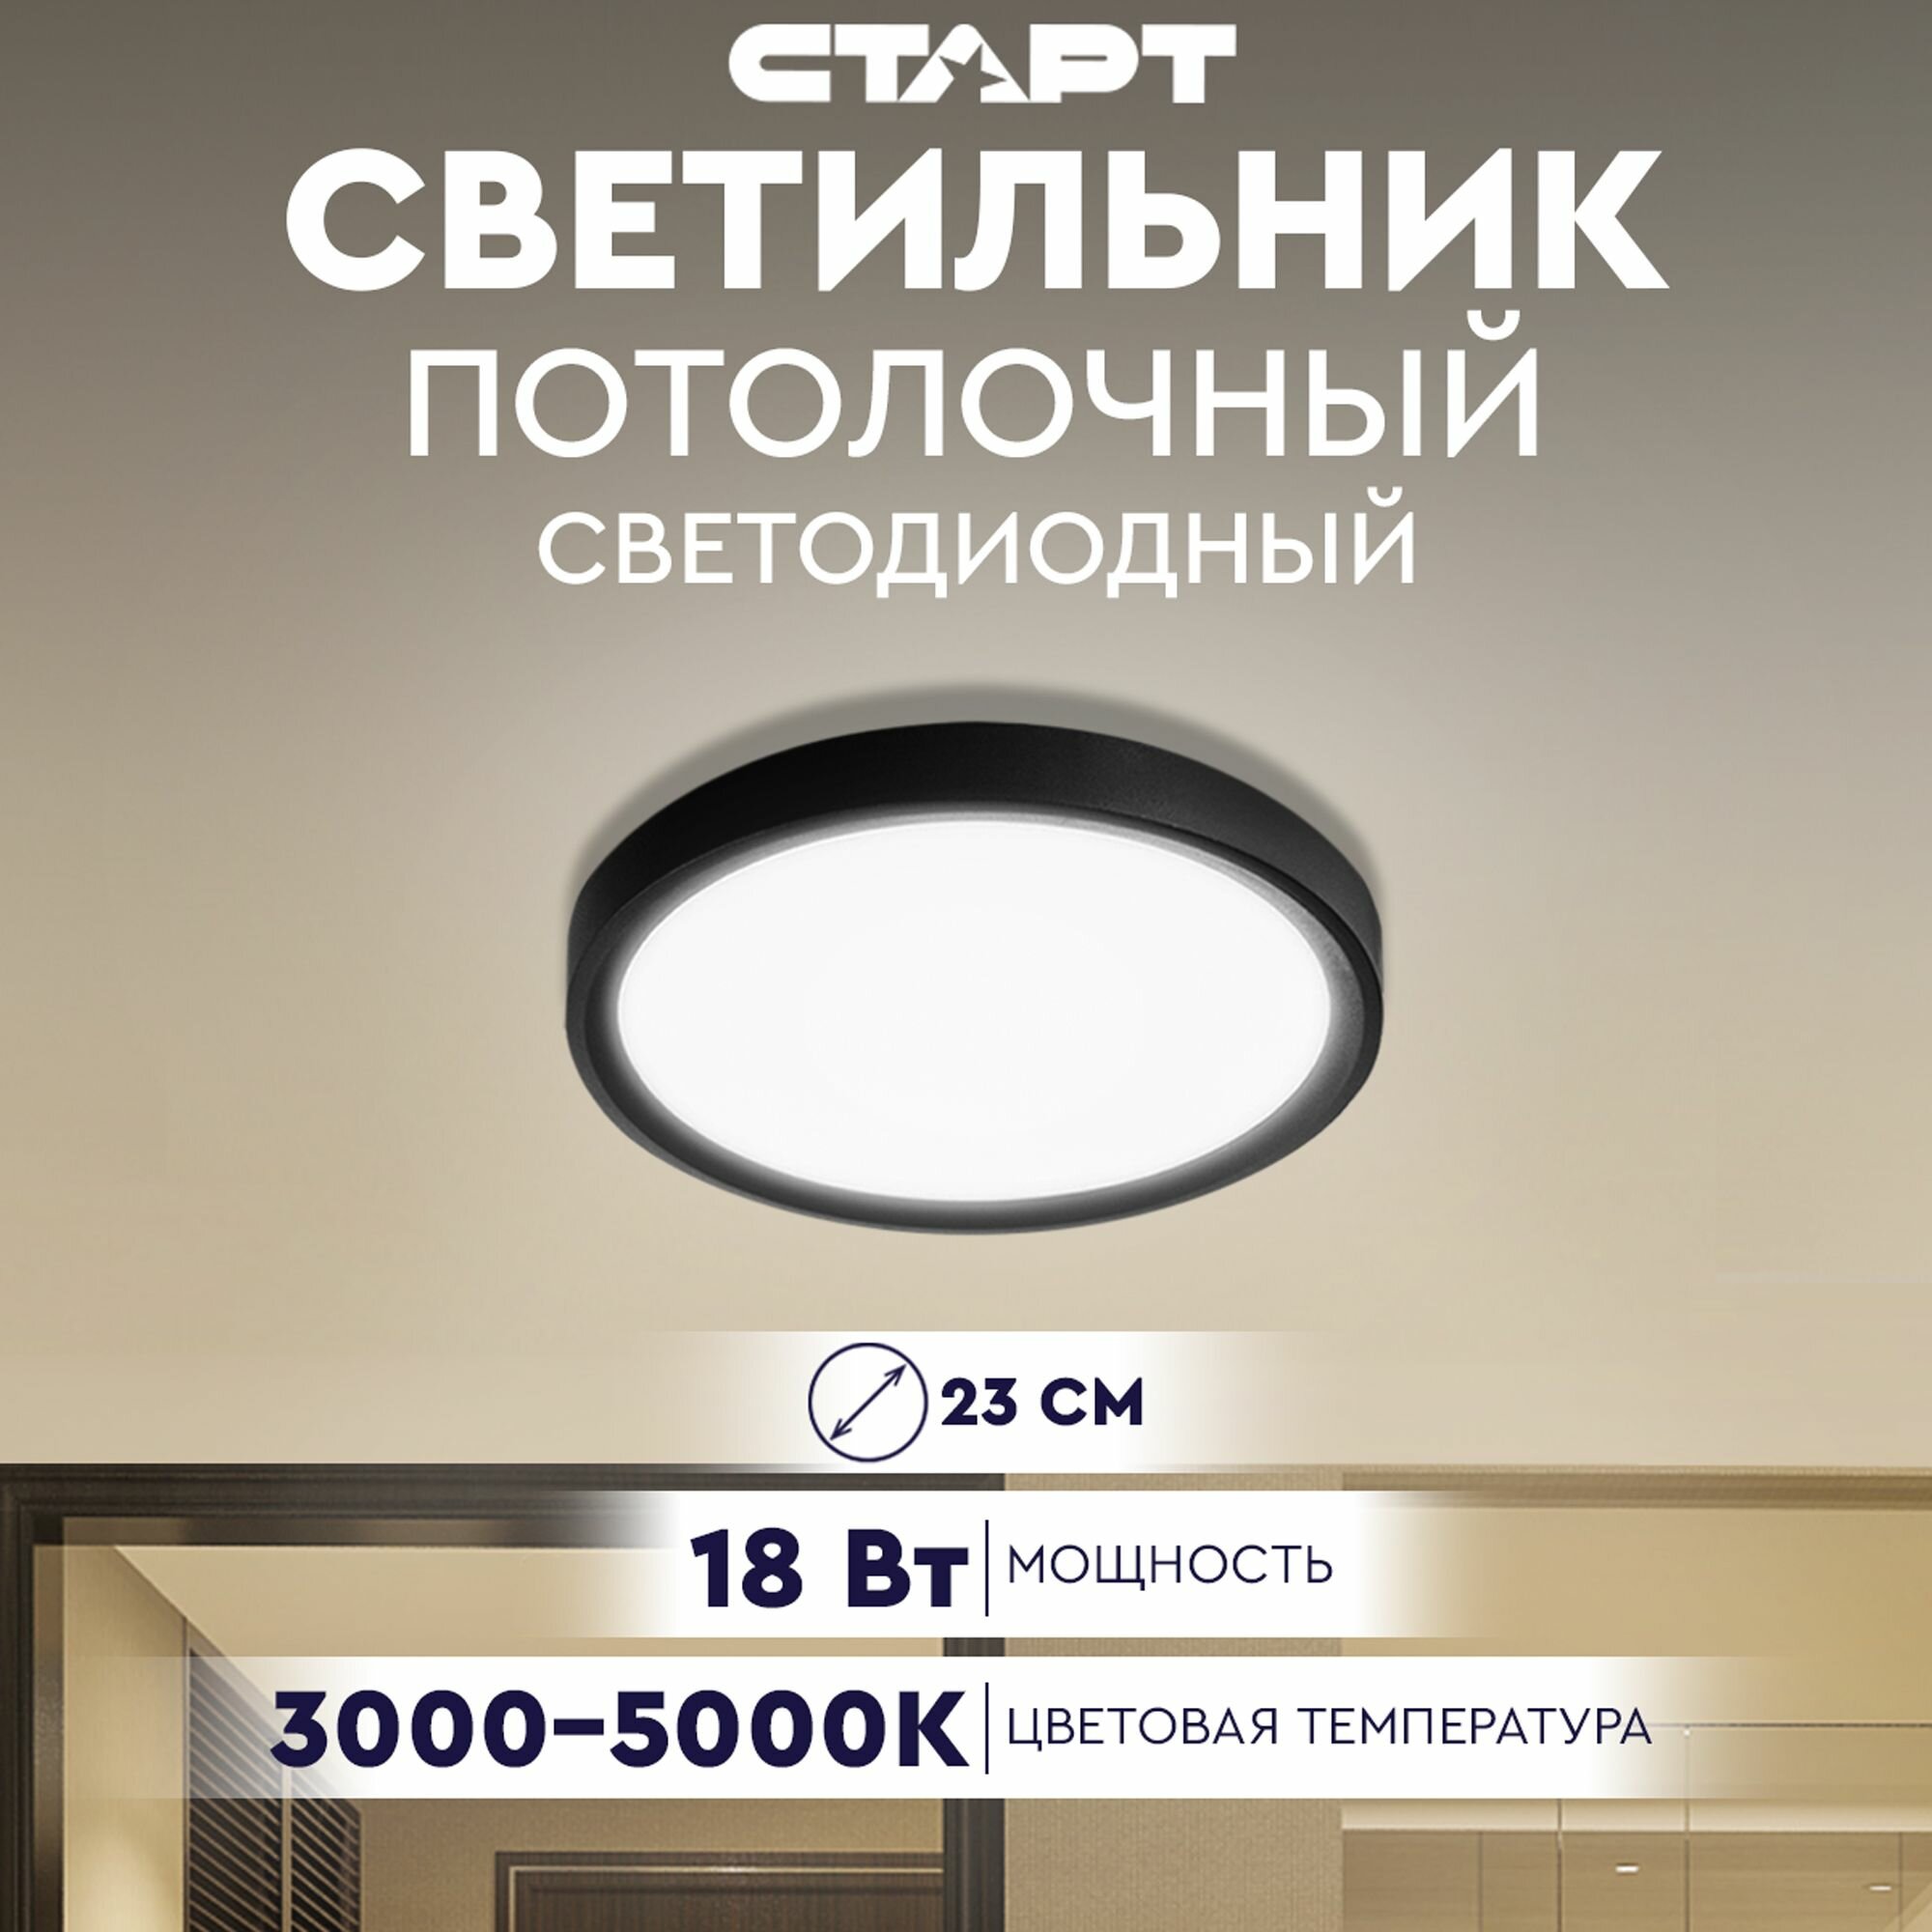 Светильник потолочный настенный светодиодный старт BaseLine, 18 Вт, 3000-5000К, 23см, IP40, черный